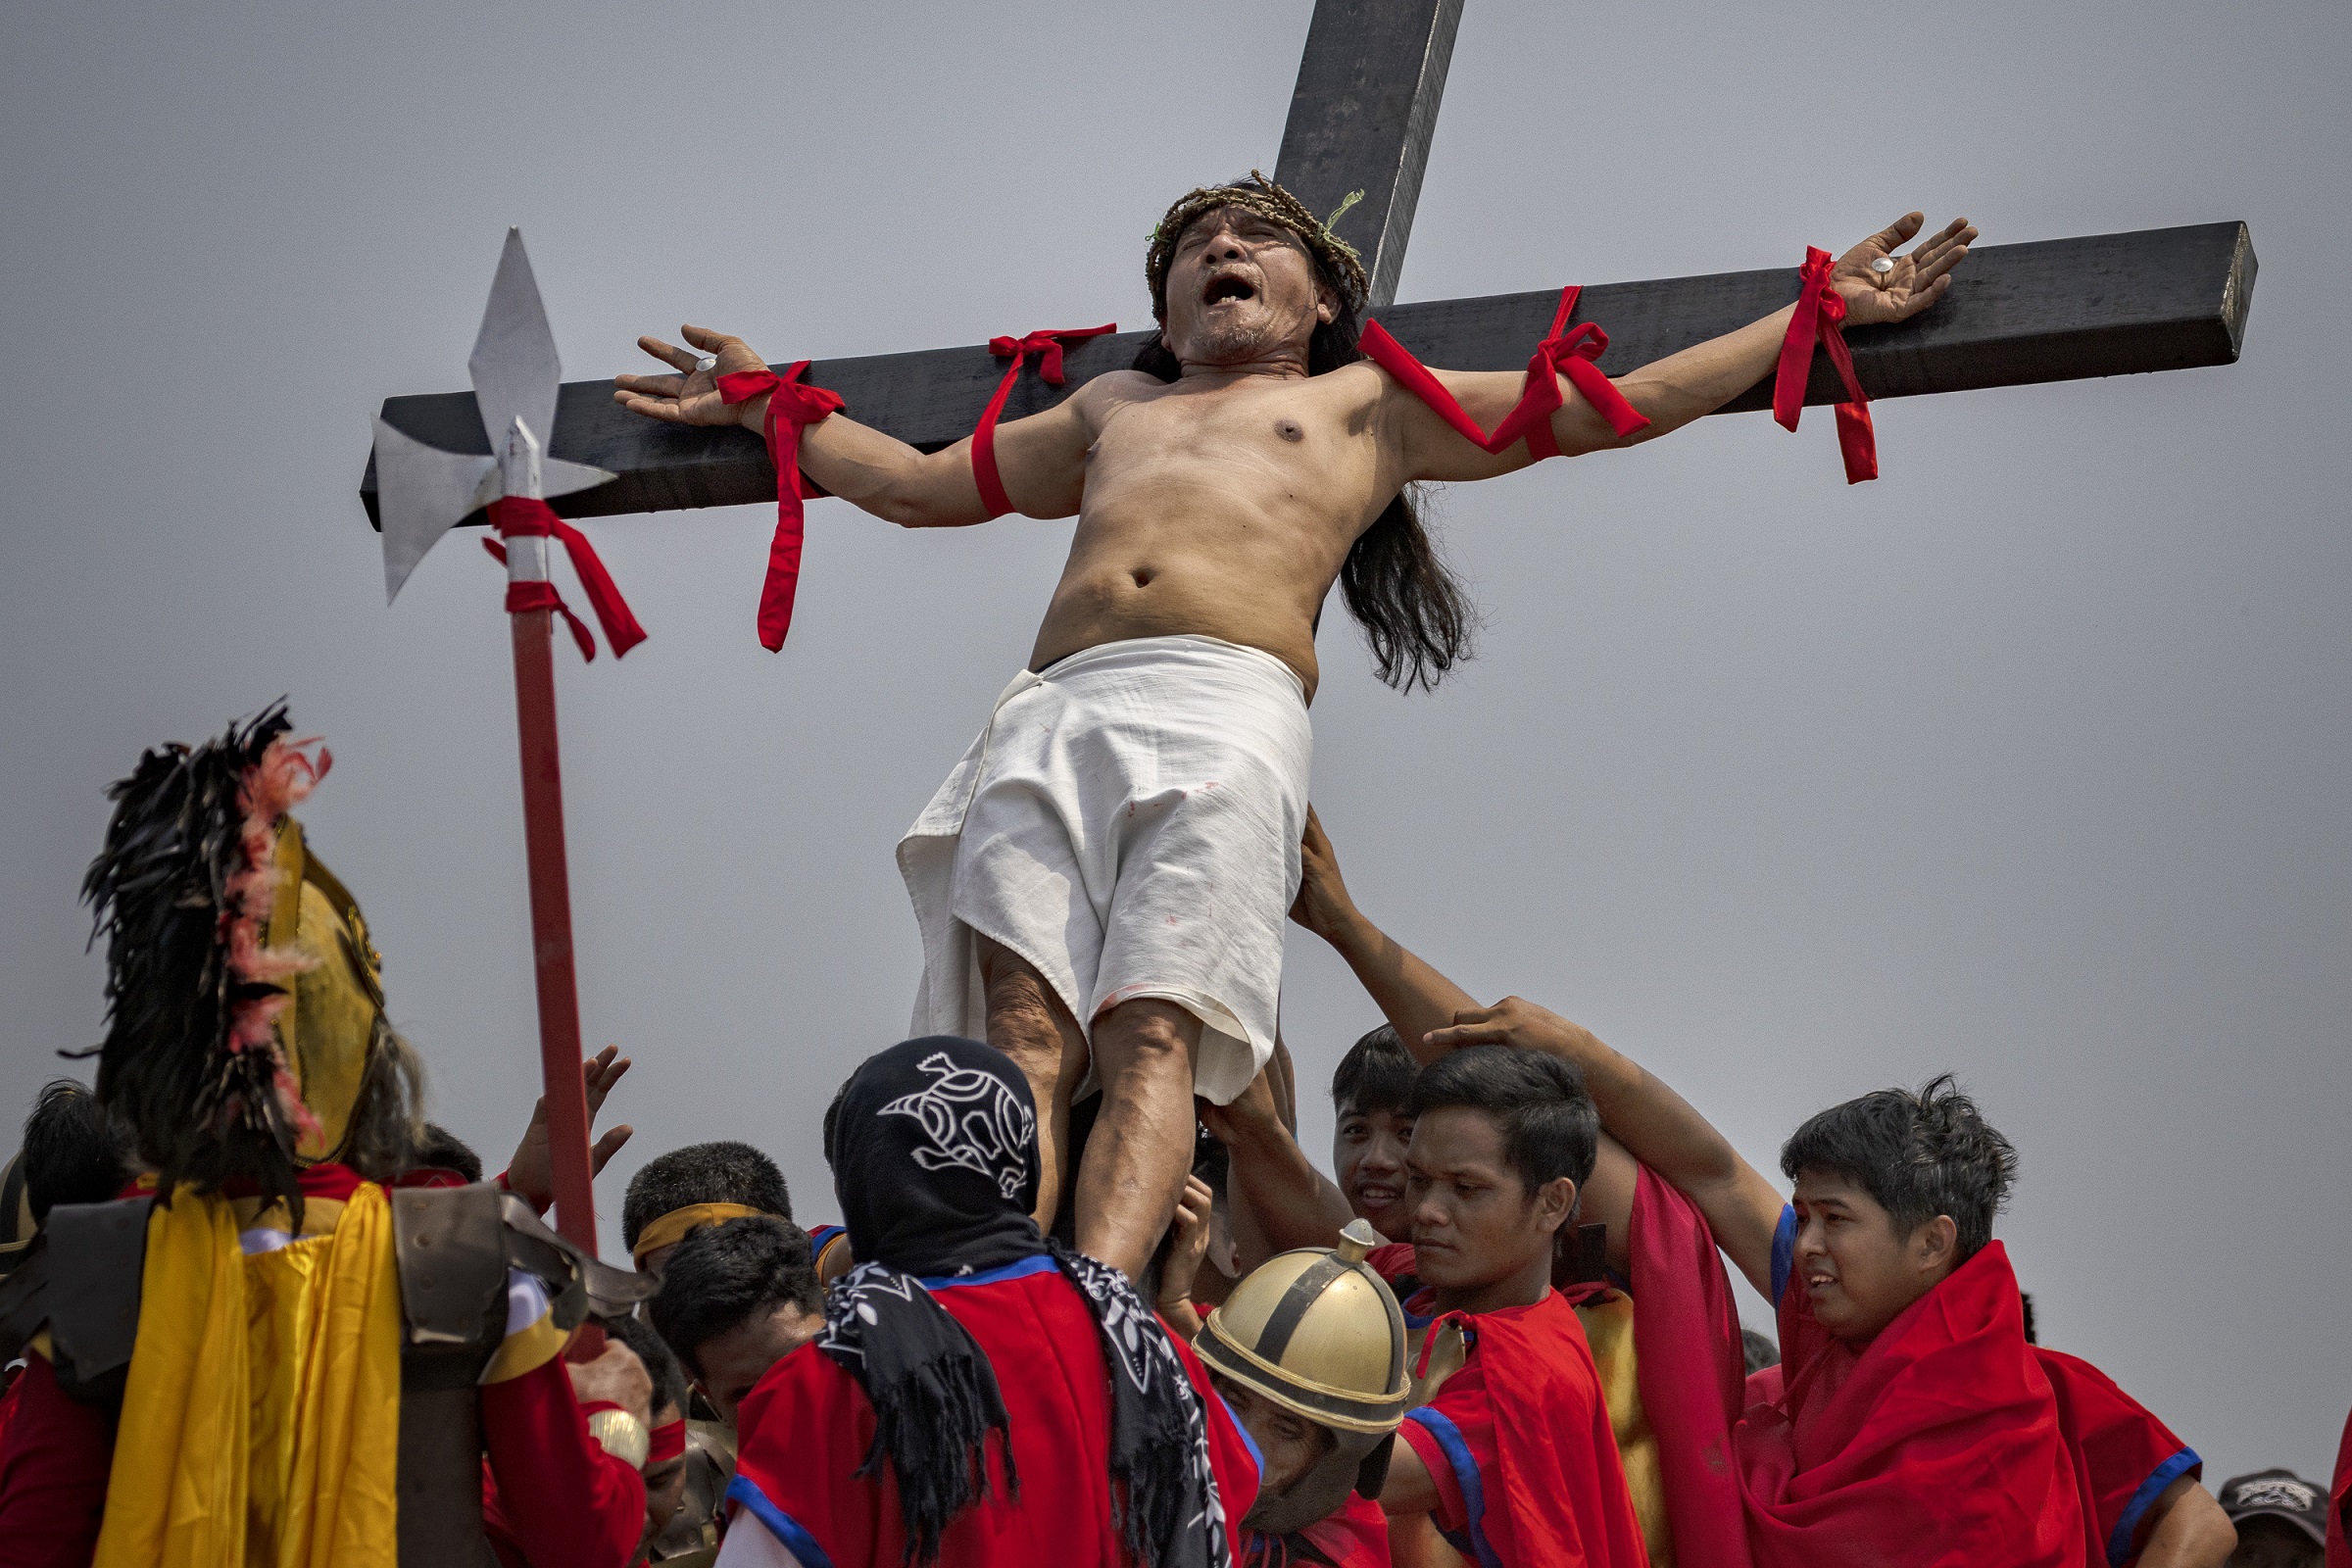 A szokások legbrutálisabbika egyértelműen a Fülöp-szigetekhez fűződik: Jézus példáját követve itt is keresztre feszítik az embereket. Akik ezt bevállalják, úgy hiszik, ez megtisztítja lelküket, habár a katolikus egyház többször is egyértelműen állást foglalt a gyakorlat beszüntetése mellett (Kép: Ezra Acayan/Getty Images)